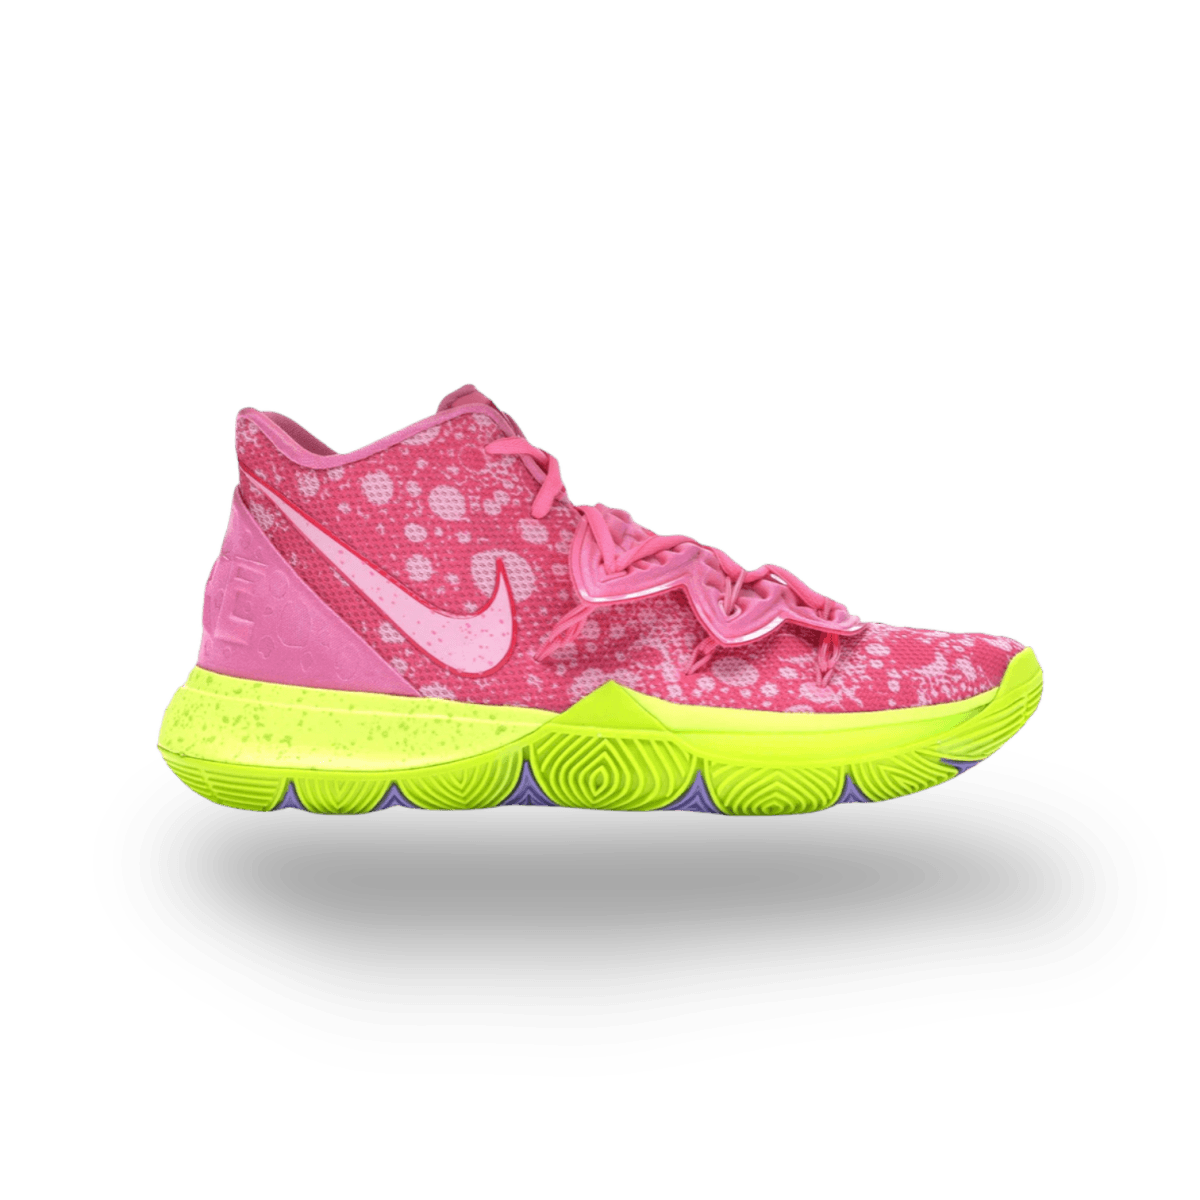 Kyrie 5 Spongebob Patrick - Mid Sneaker - Nike - Jawns on Fire